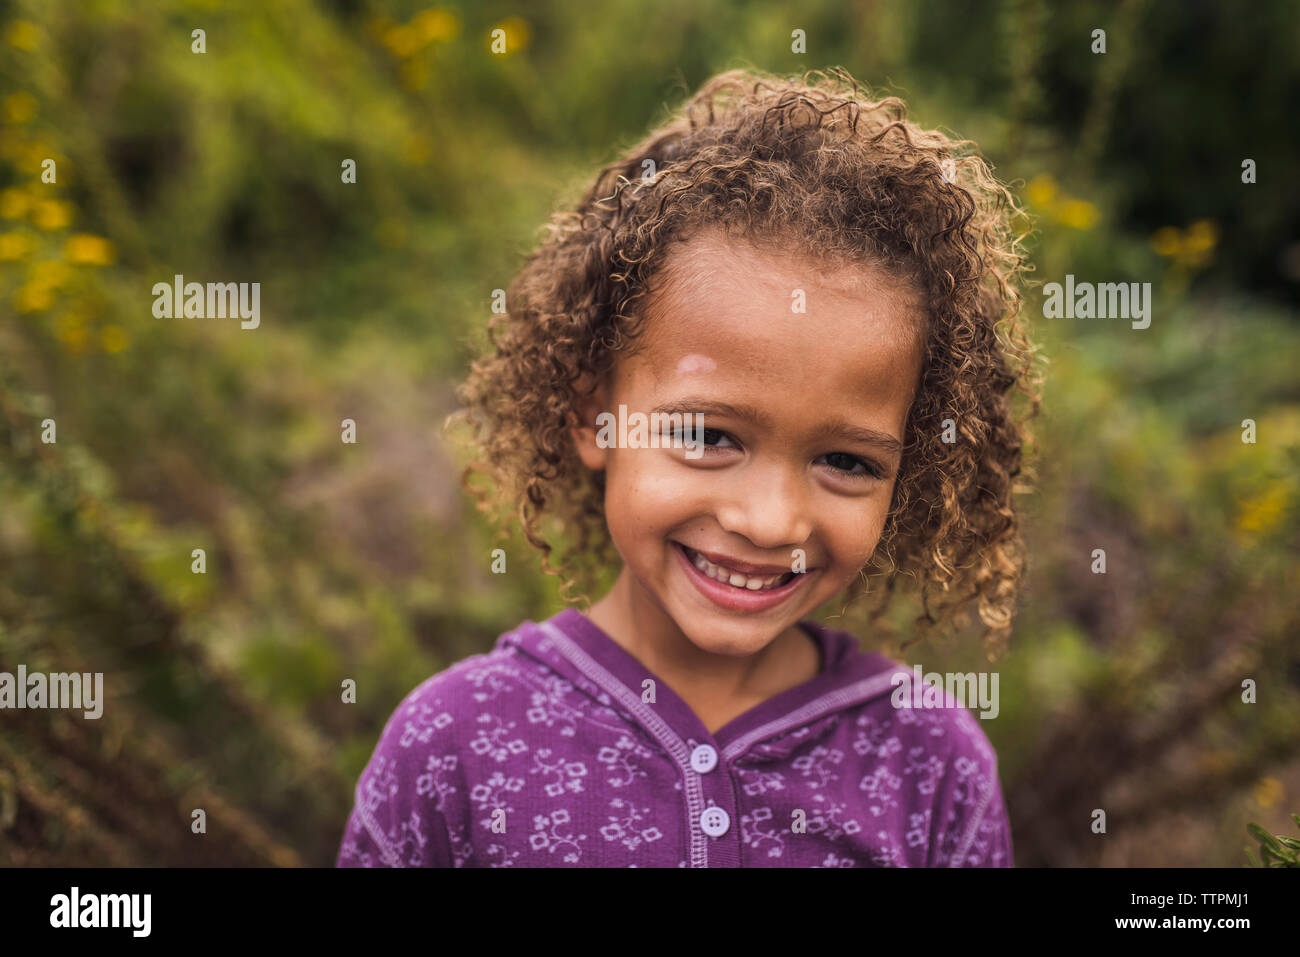 Close-up retrato de niña alegre con el pelo rizado estando en contra de plantas en el parque Foto de stock